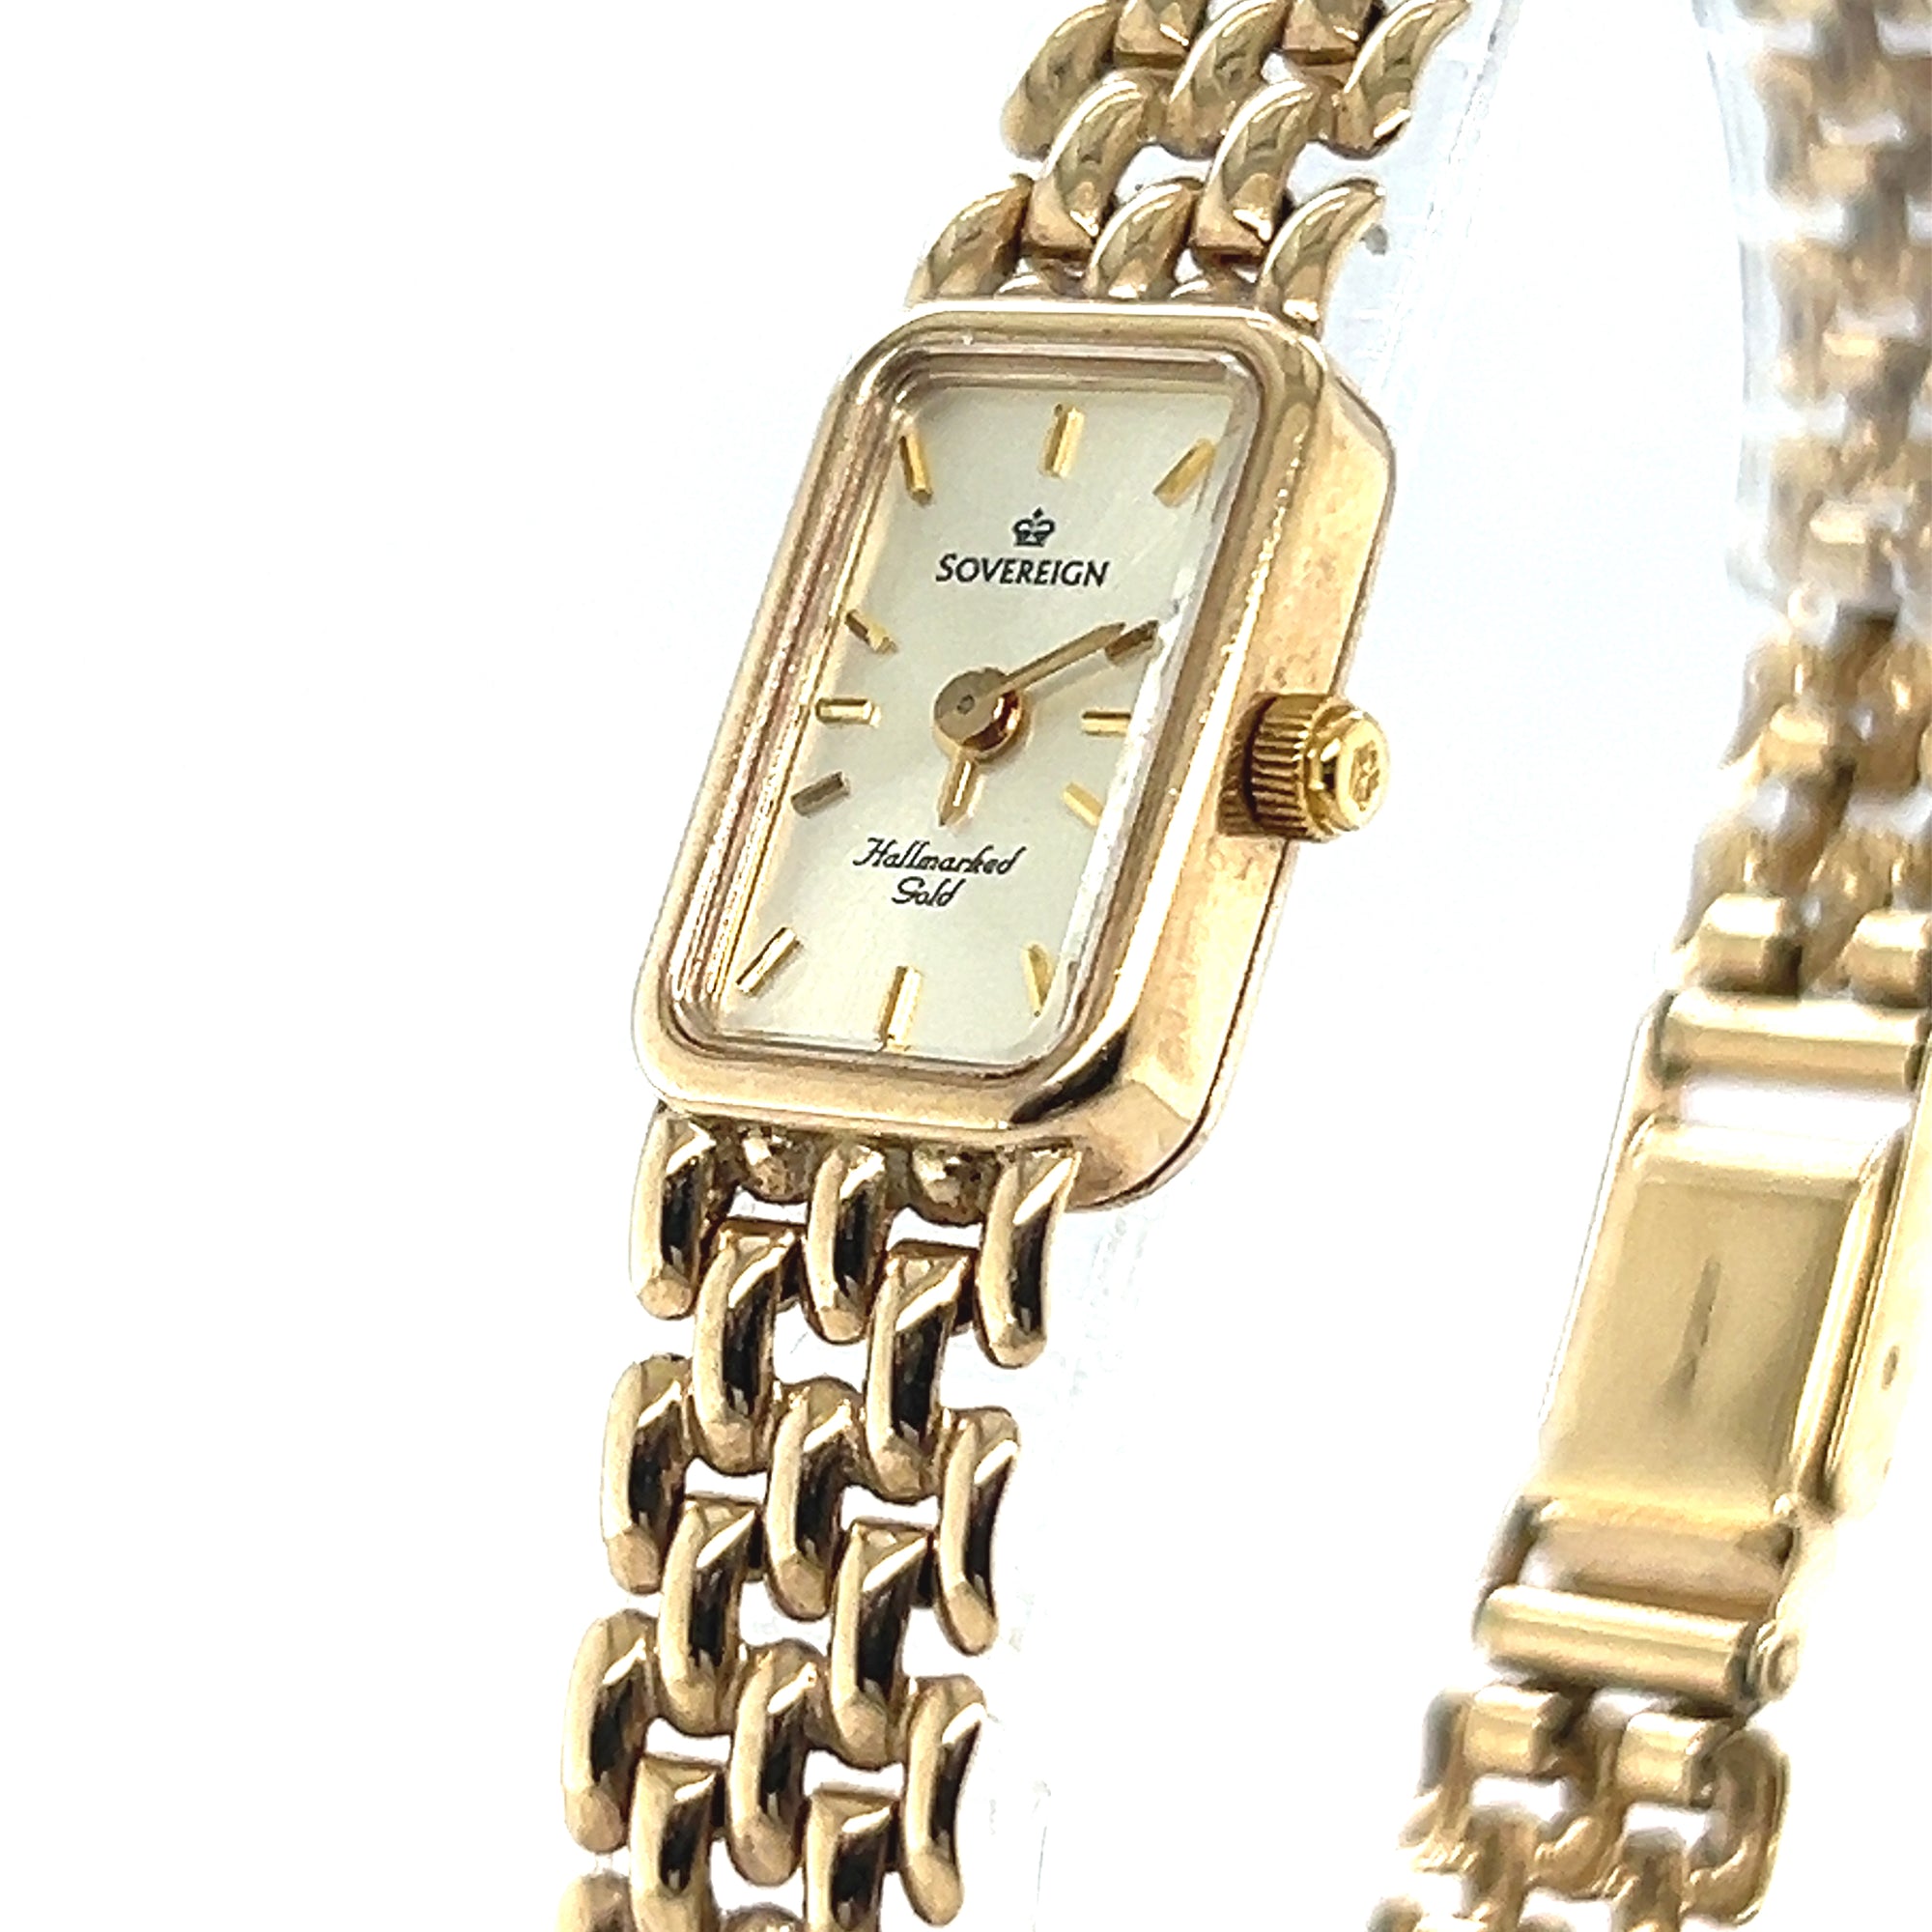 Sovereign Ladies 9ct Gold Wrist Watch